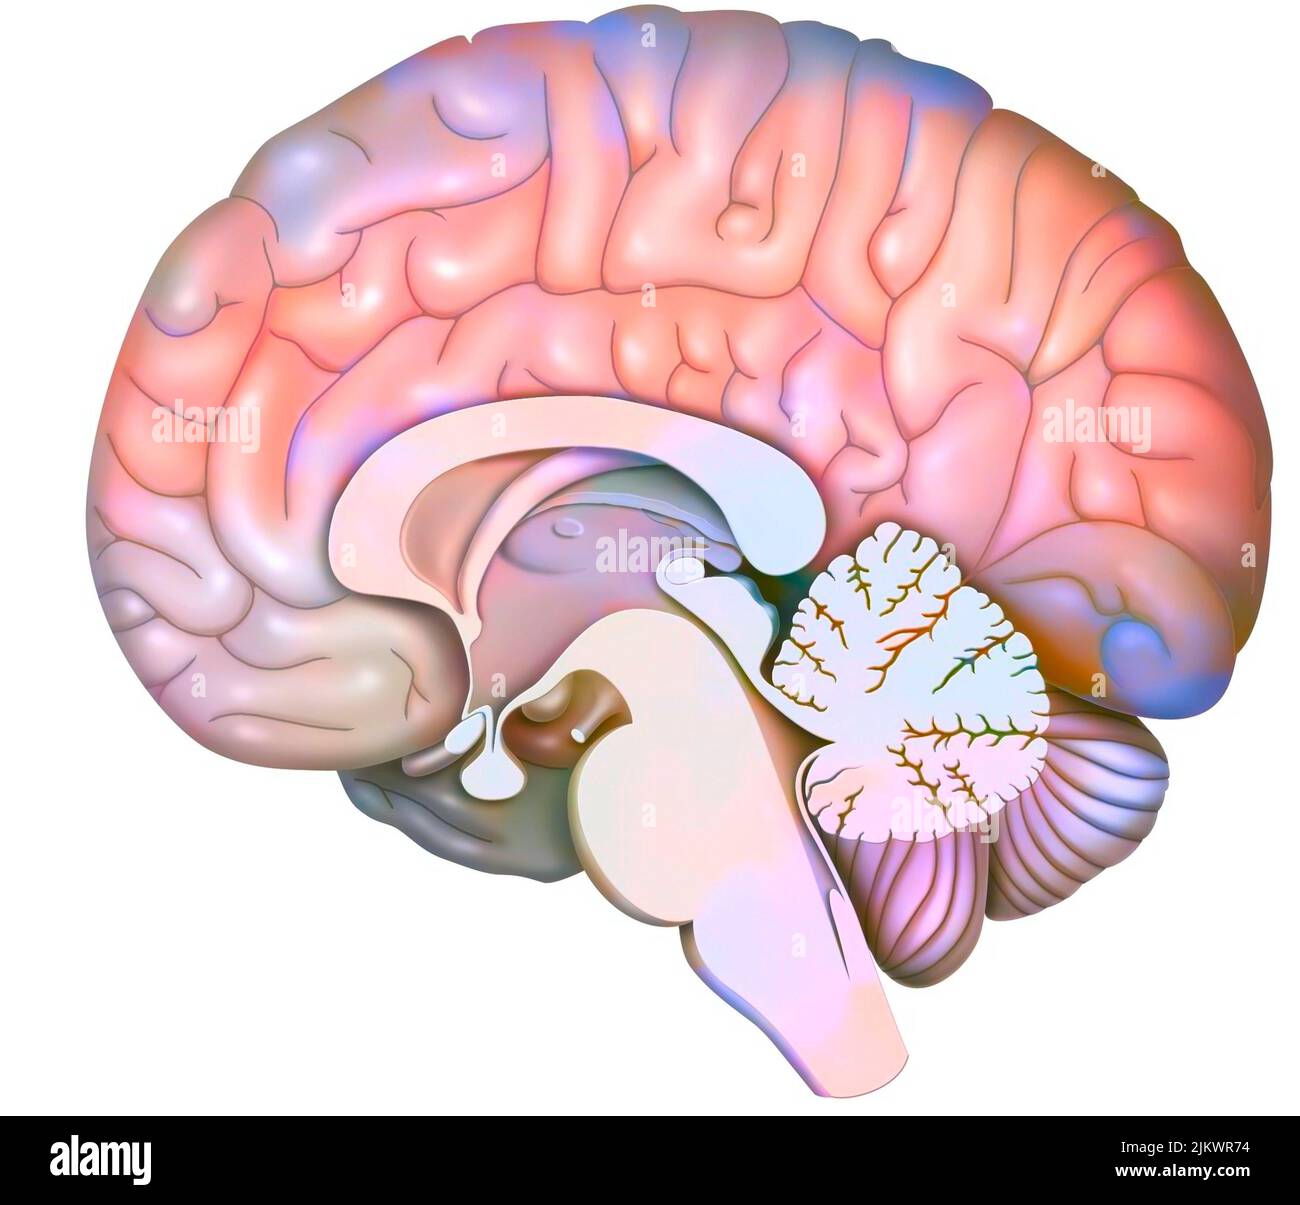 Medianer sagittaler Hirnschnitt mit Zerebellum und Beginn des Hirnstamms. Stockfoto